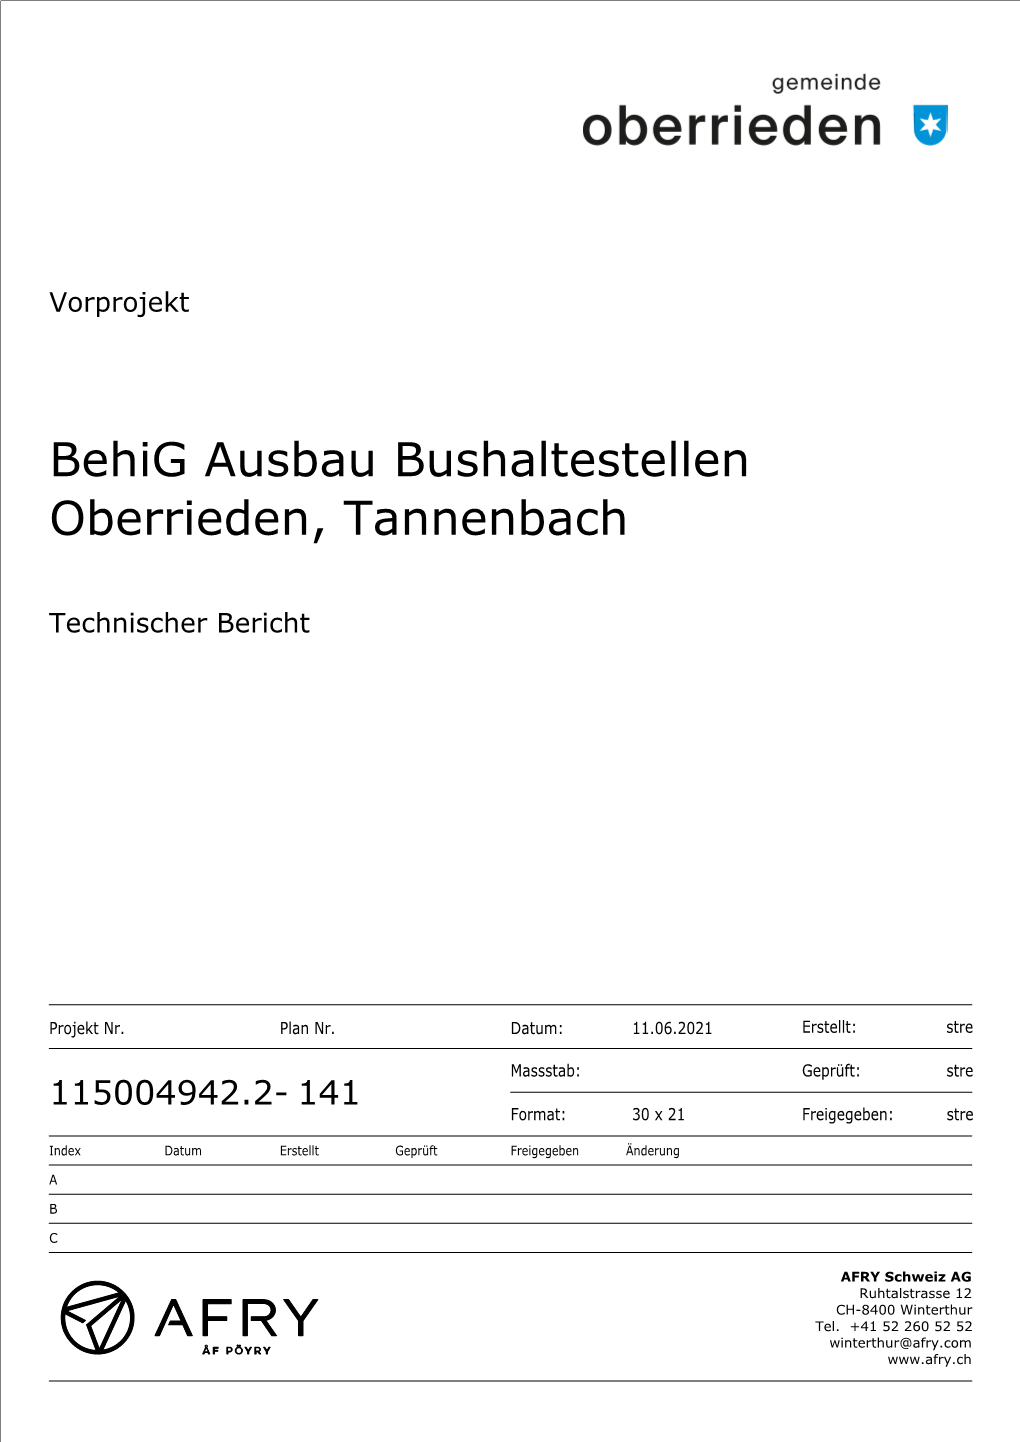 Behig Ausbau Bushaltestellen Oberrieden, Tannenbach